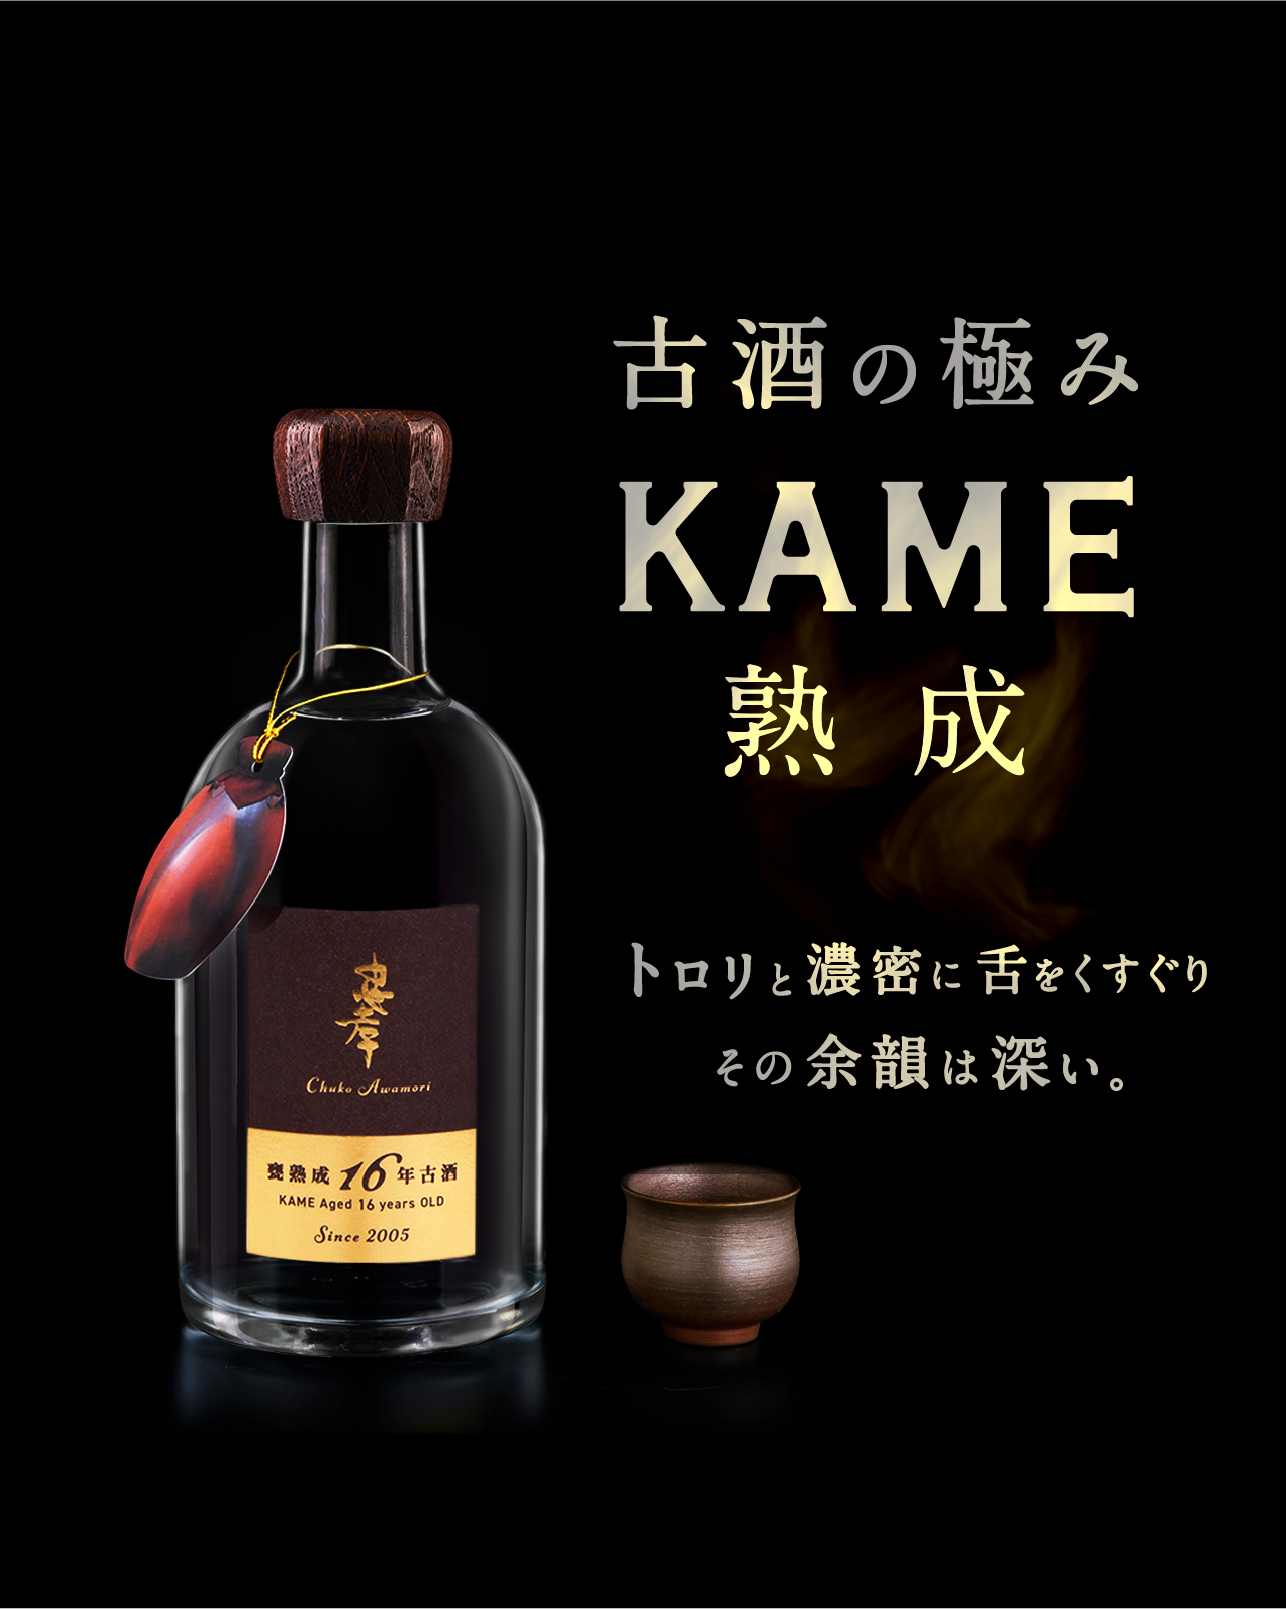 忠孝酒造 Makuake「Chuko KAME Project」公開しました♪ | 忠孝酒造 